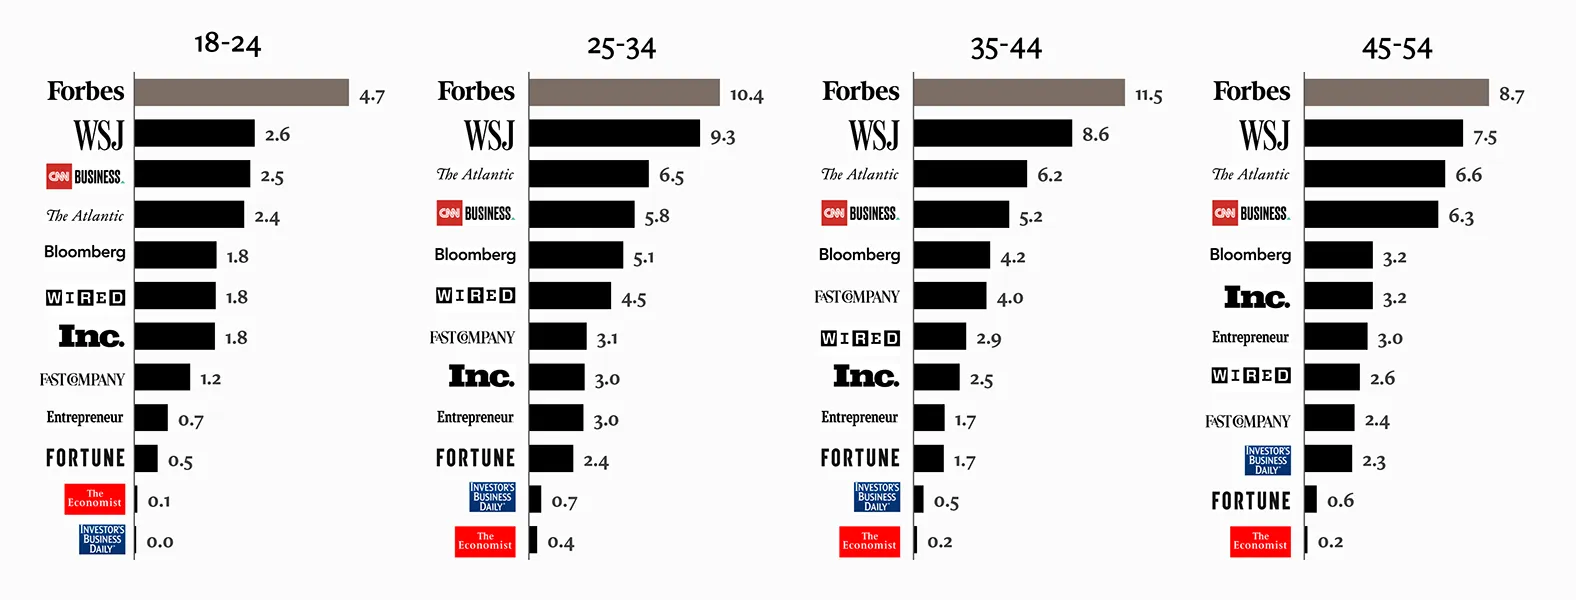 Forbes brand demographics bar chart